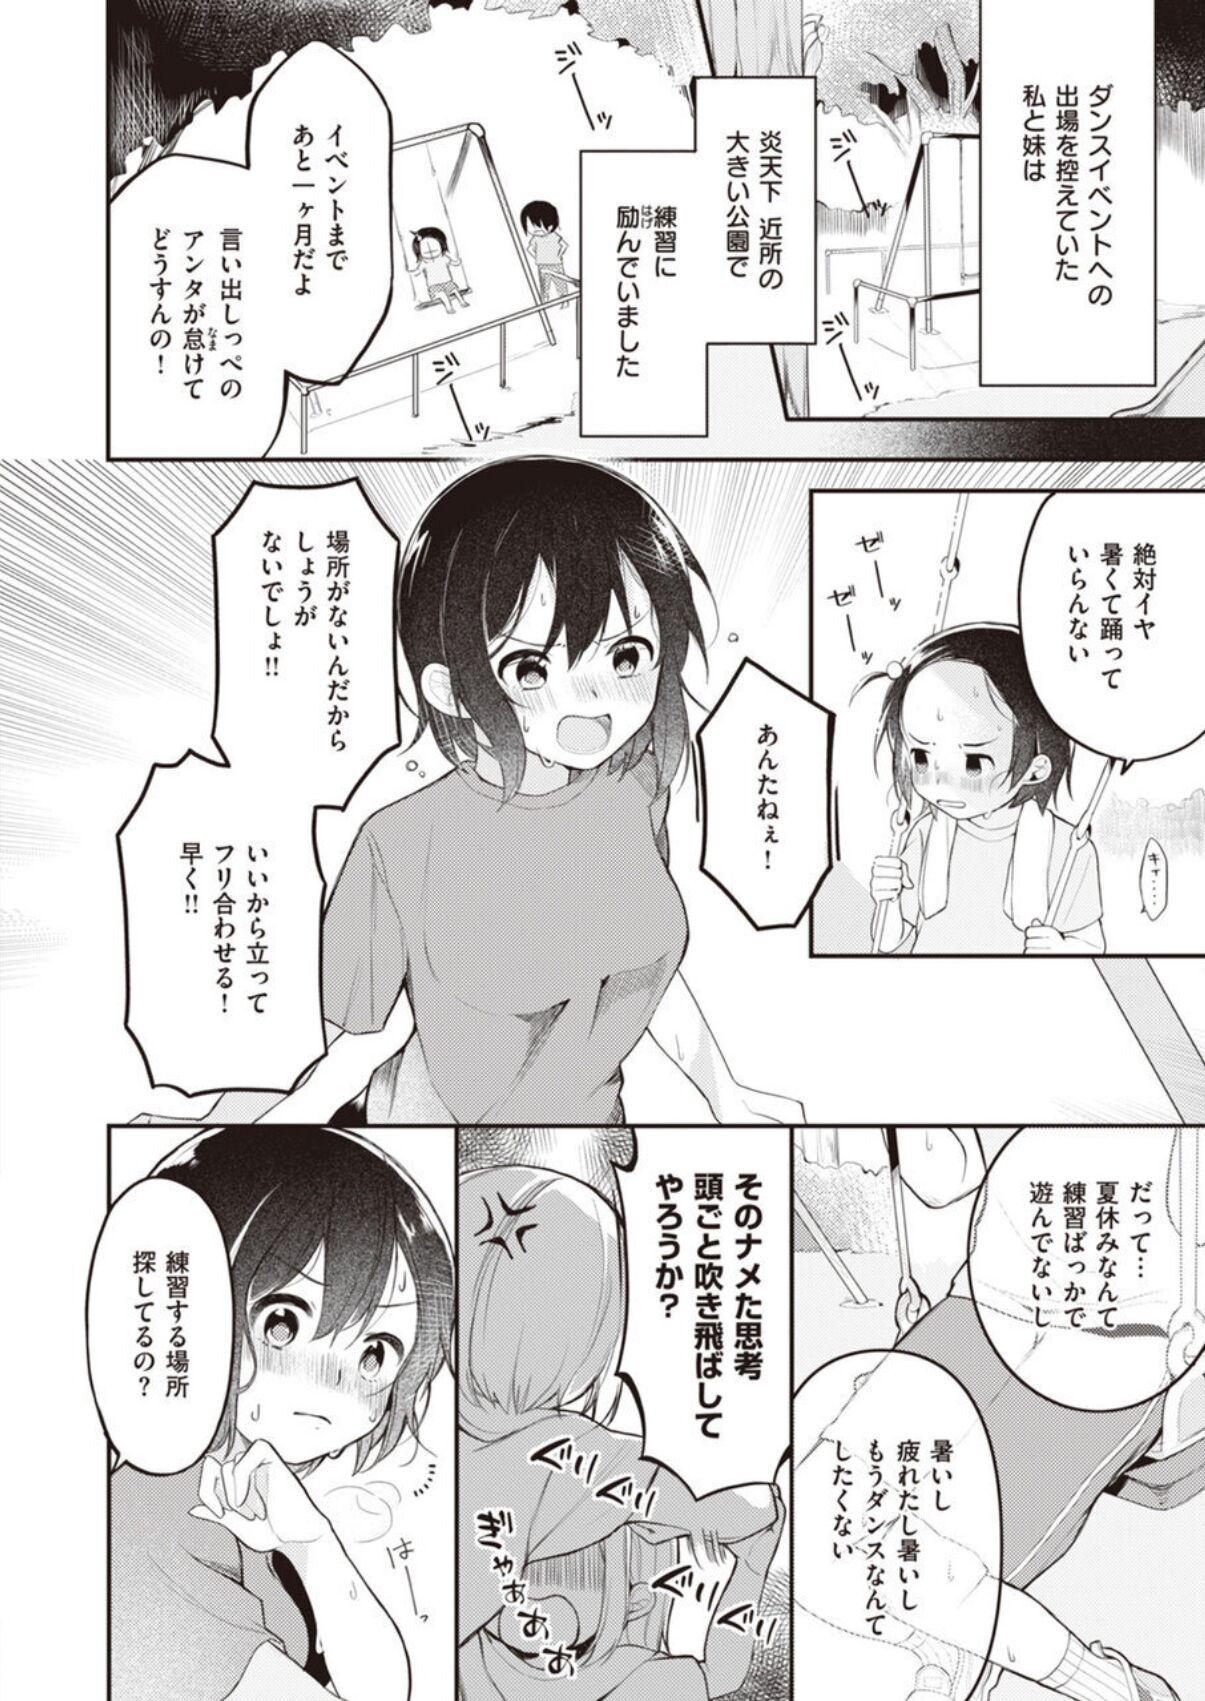 Bra Nagase Tooru no Eromanga-teki na Seikatsu daiichi kan Transsexual - Page 6